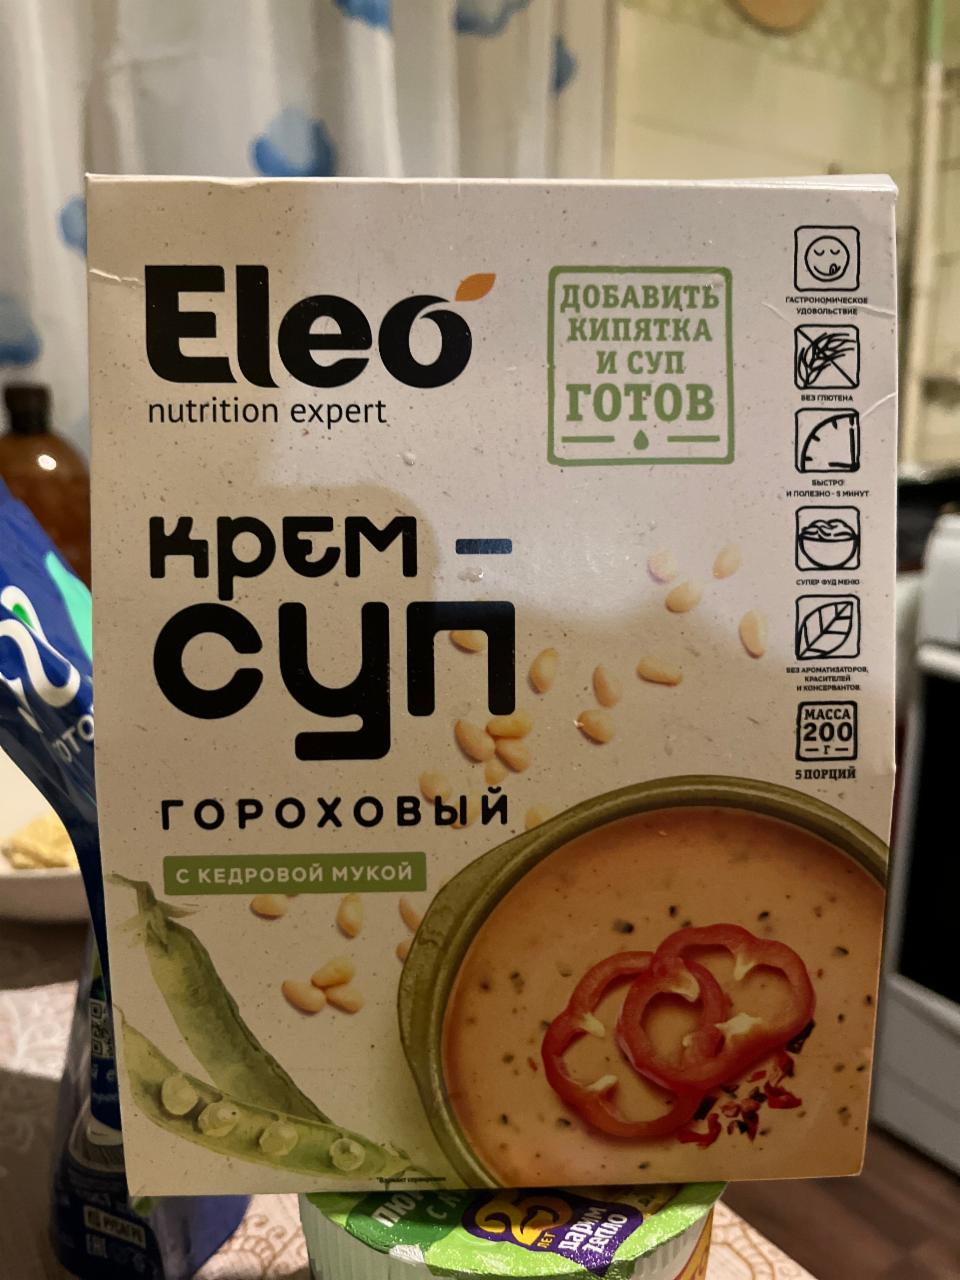 Фото - Крем-суп гороховый с кедровой мукой Eleo